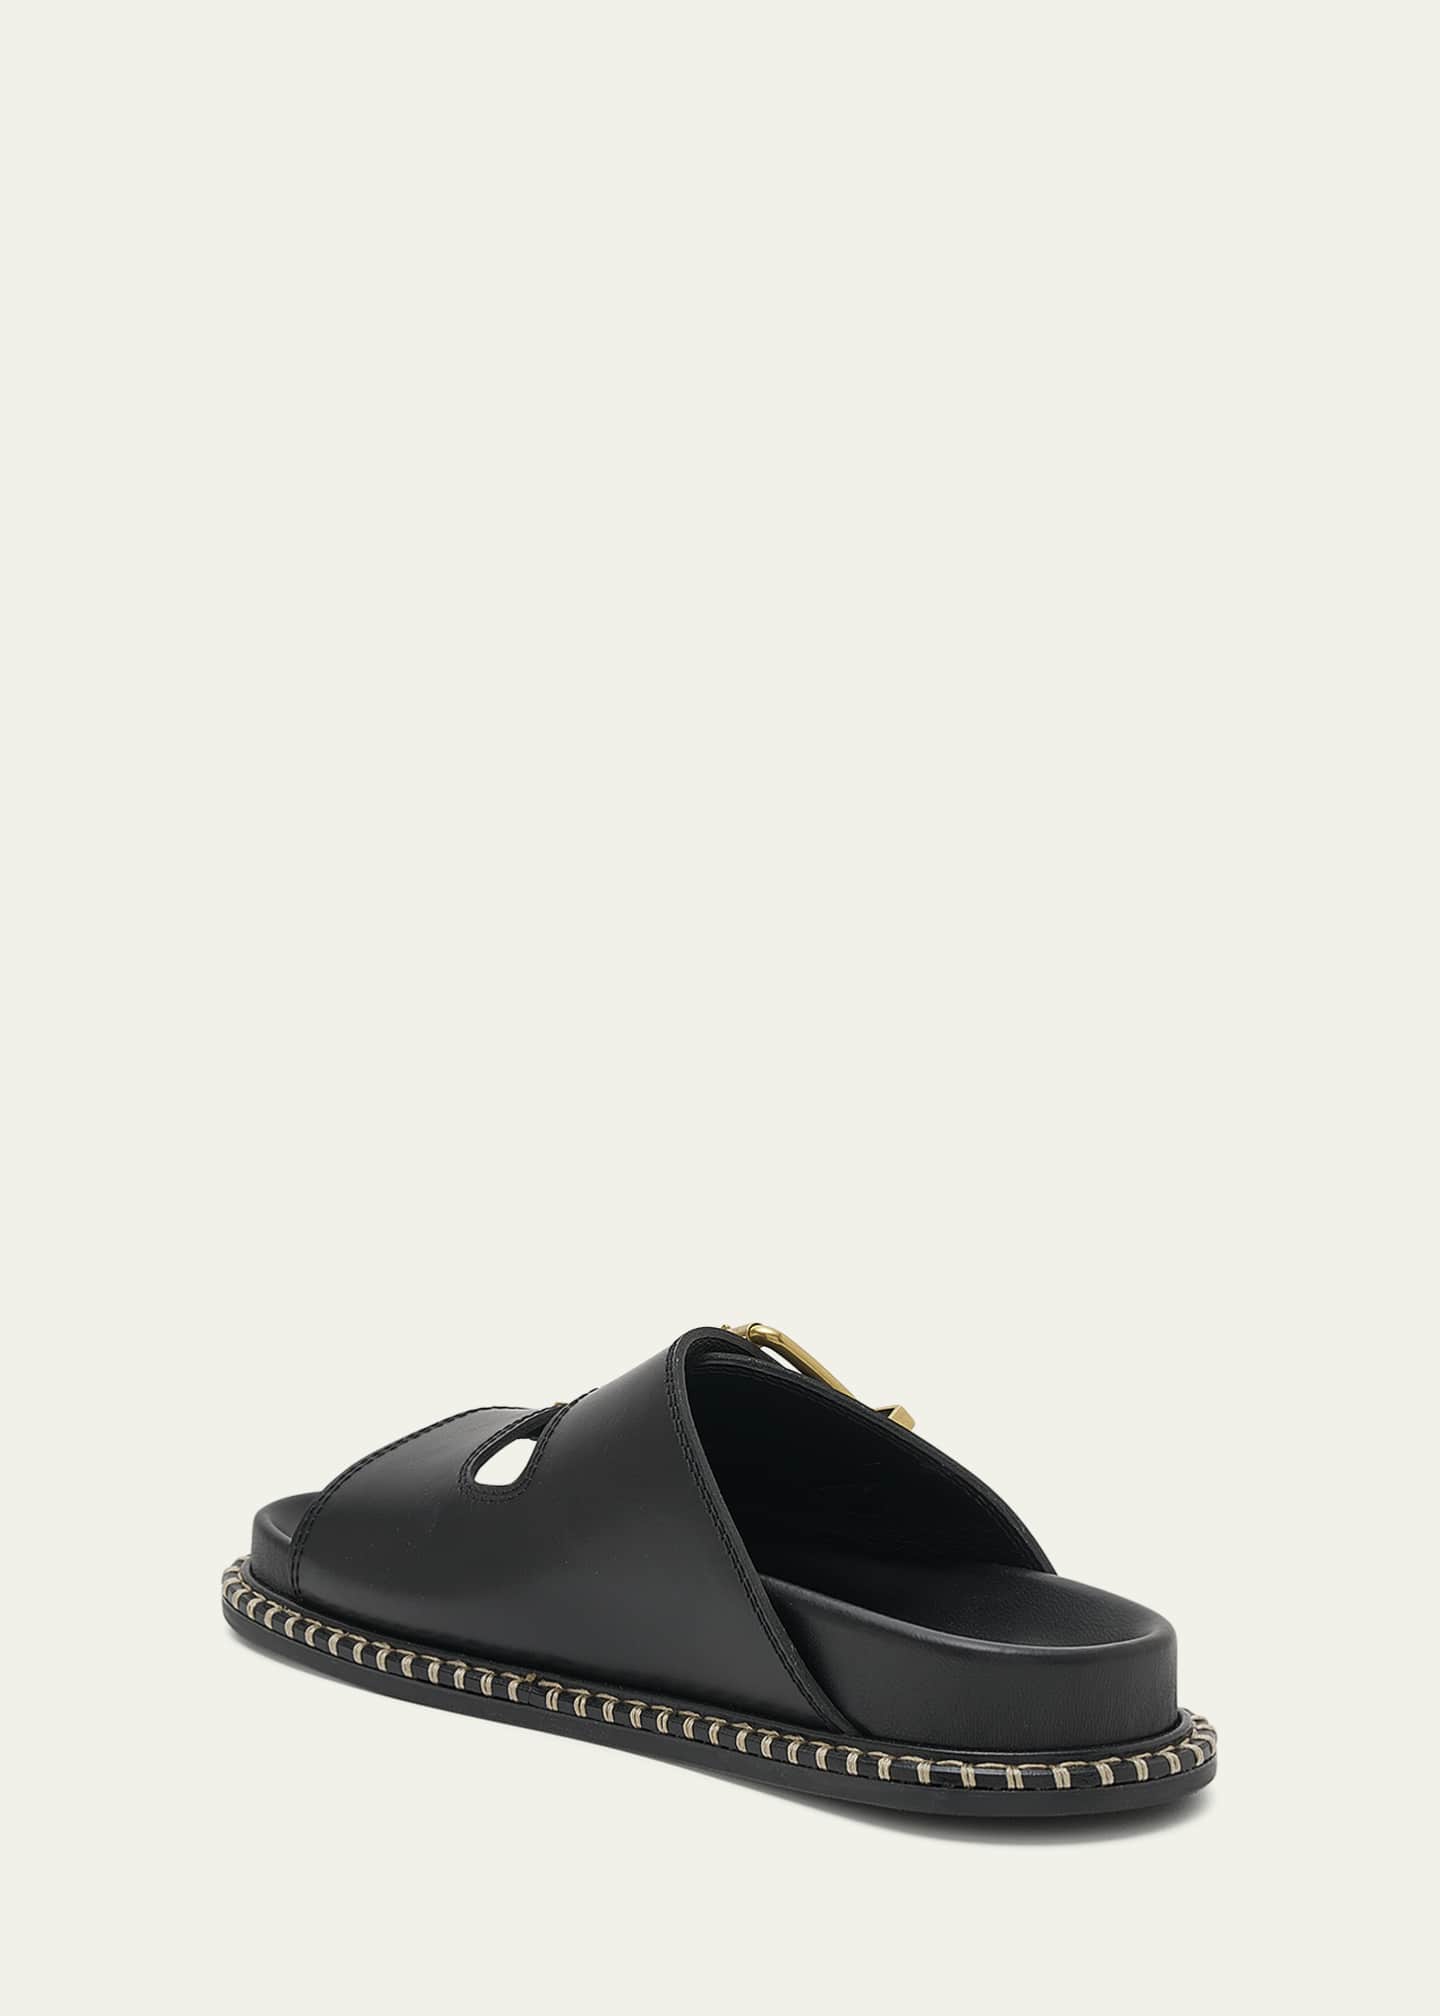 Chloe Rebecca Leather Dual Buckle Slide Sandals - Bergdorf Goodman